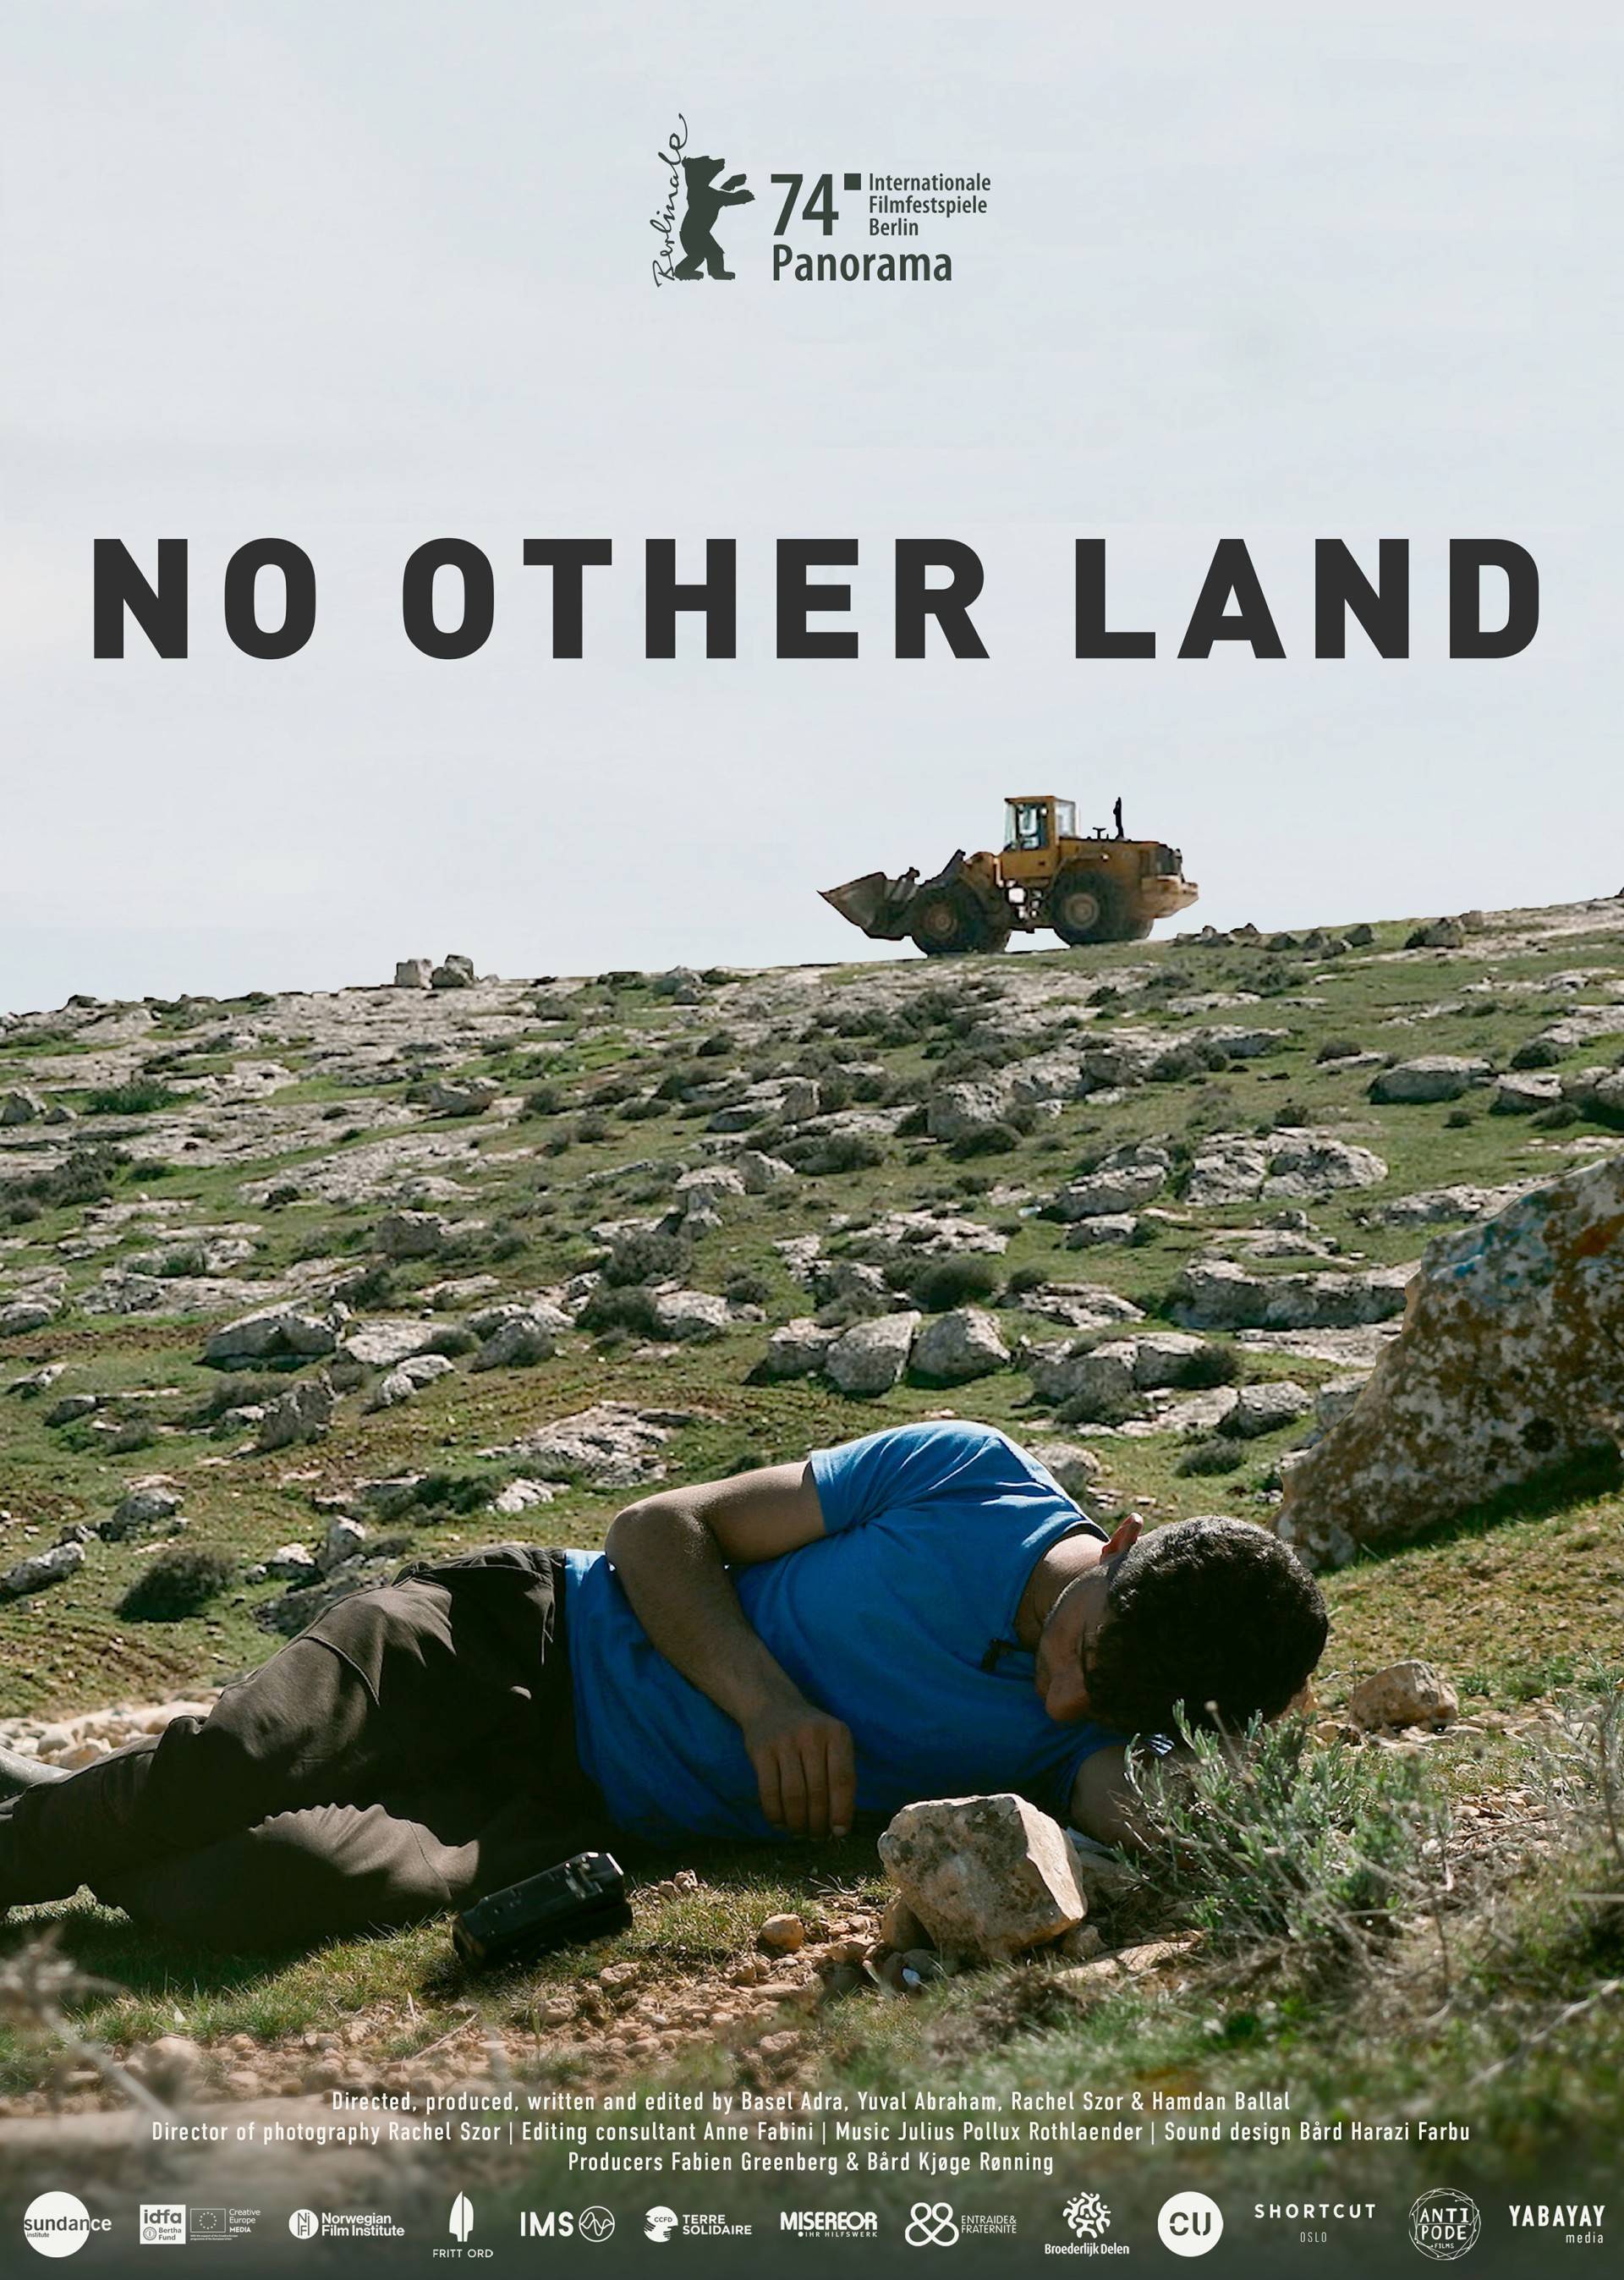 فيلم "لا أرض أخرى" الفلسطيني النرويجي يروي جرائم الاحتلال والمستوطنين في الضفة الغربية